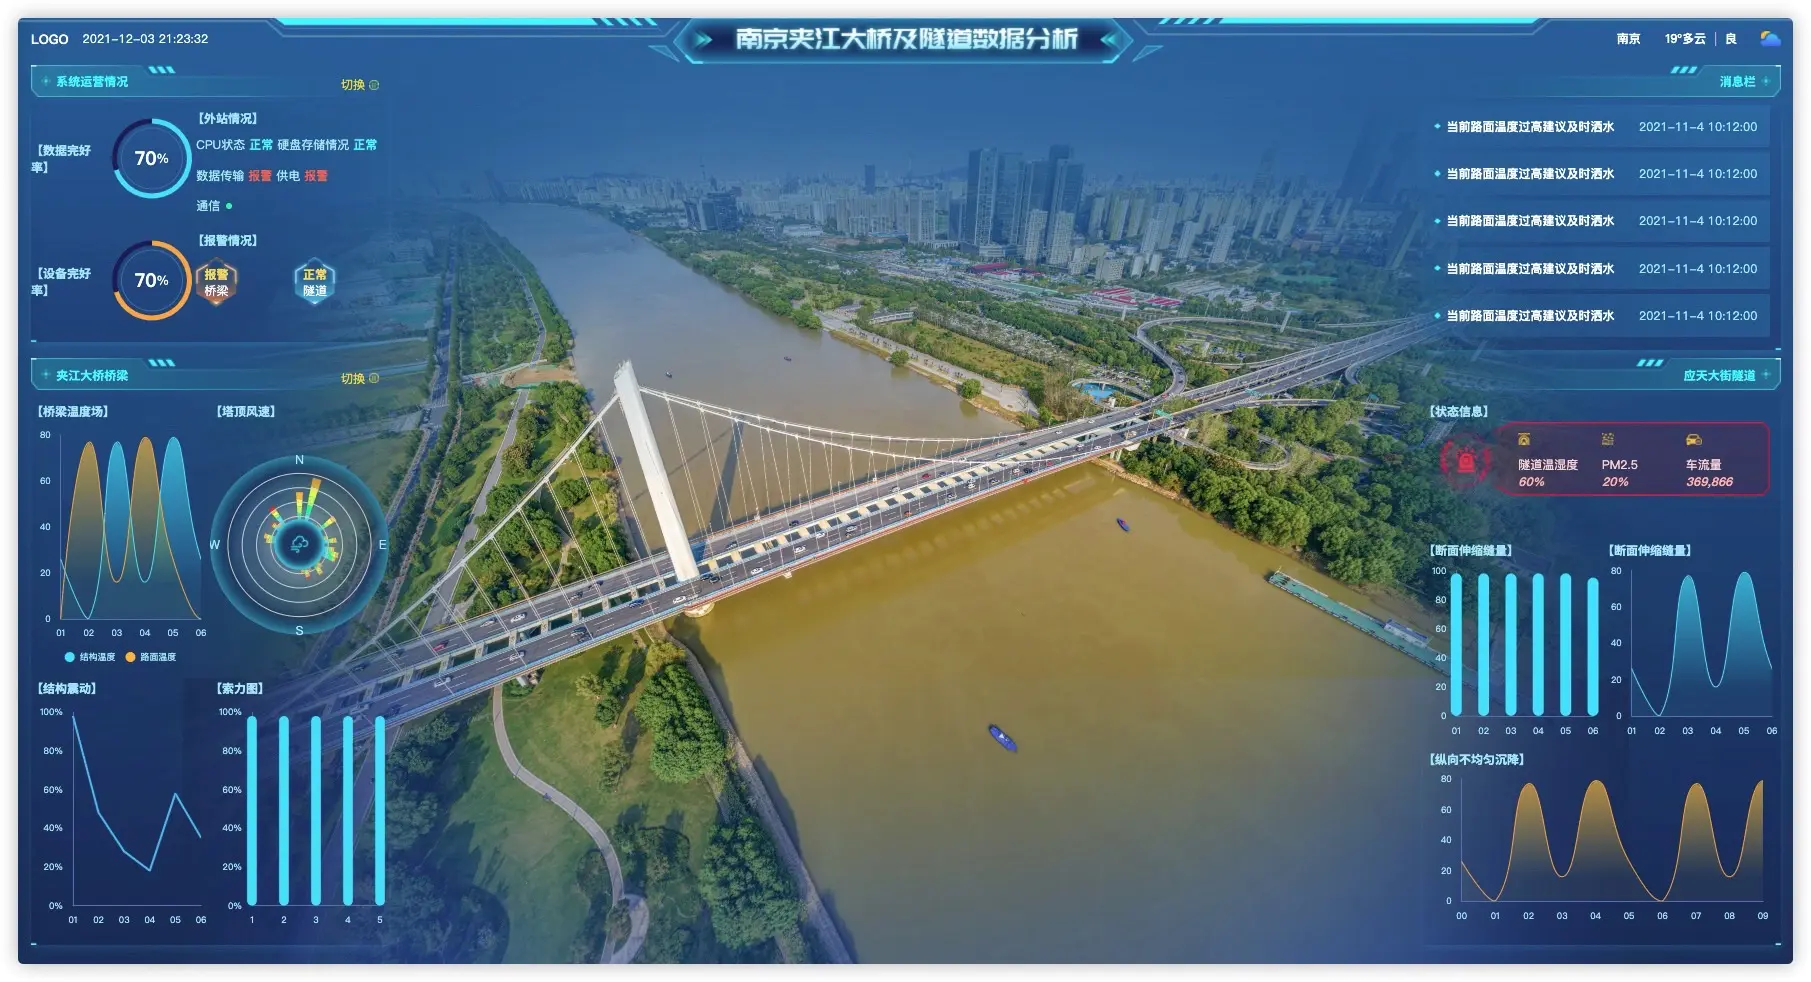 vue 数据可视化大屏 夹江大桥及隧道数据分析